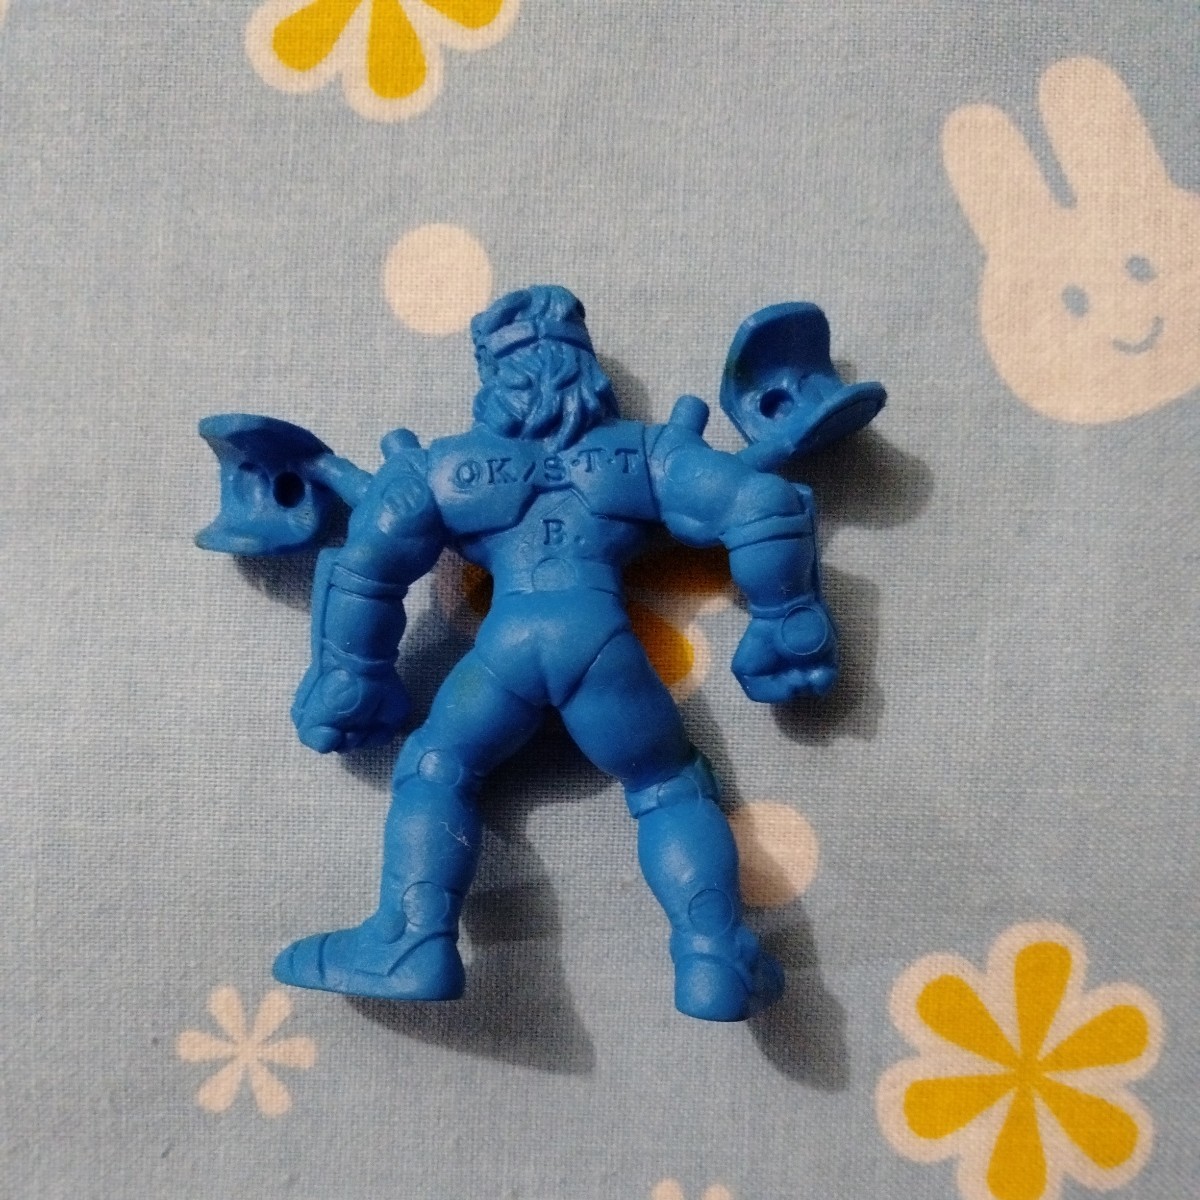  Saint Seiya резиновый фигурка резина кукла большой медведь сиденье Bear -. синий медь ... б/у товар ga коричневый gashapon Capsule игрушка 